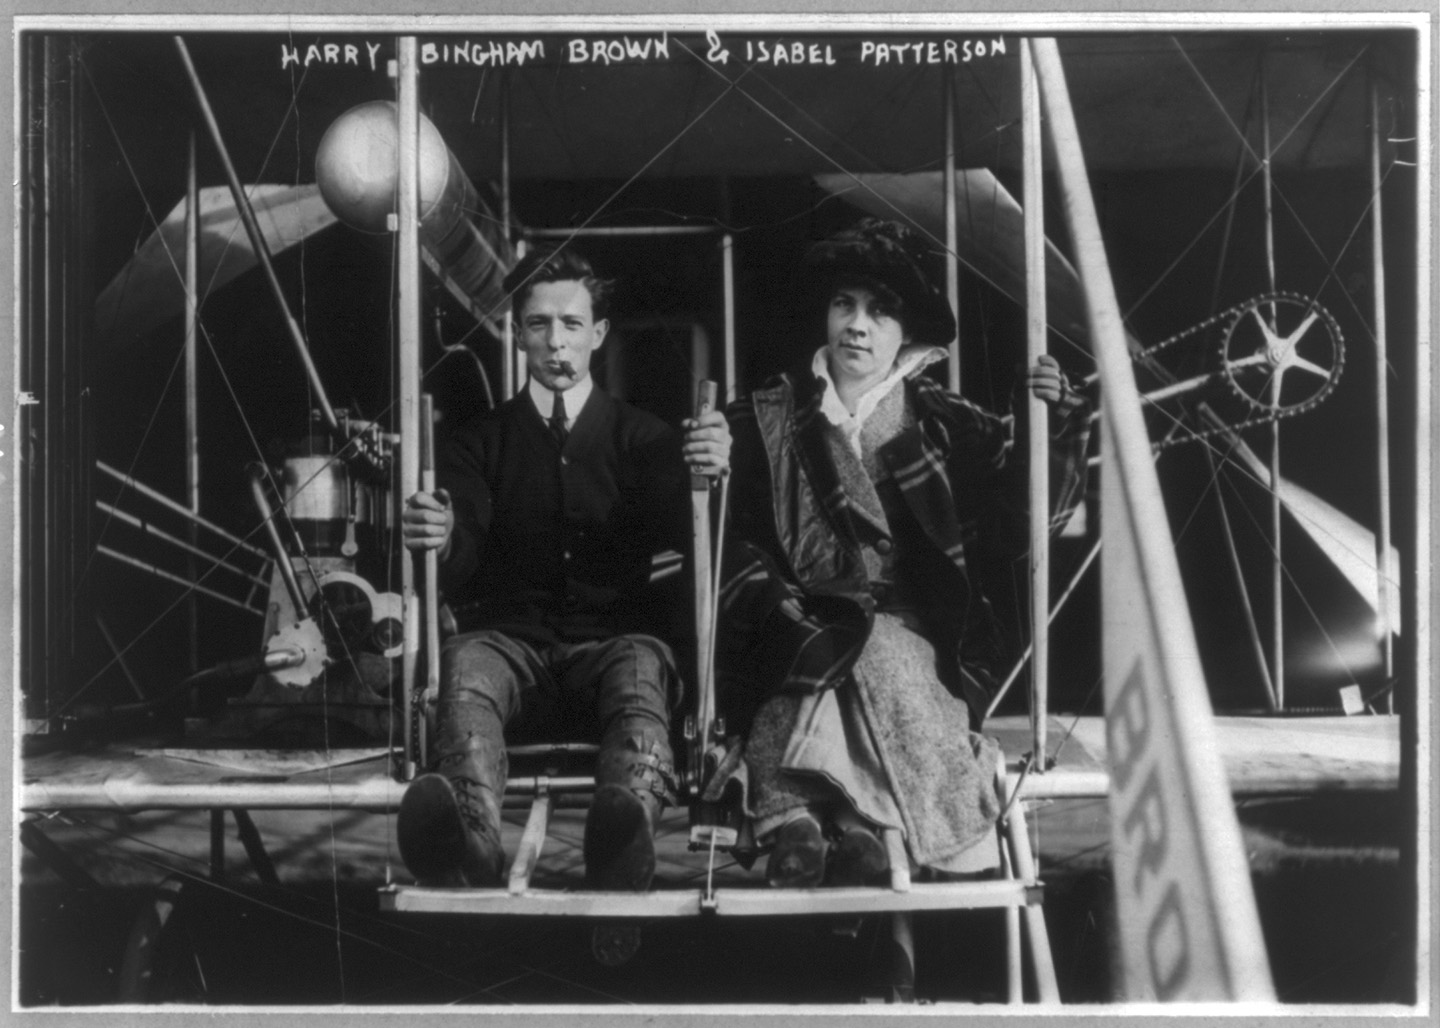 Ông Harry Bingham Brown và bà Isabel Paterson (tên của bà đã bị viết sai chính tả trên bức hình) cùng chụp ảnh trên chiếc phi cơ sau khi phá vỡ kỷ lục Mỹ về độ cao bay ở Đảo Staten vào ngày 06/11/1912. (Ảnh: Tài sản công)